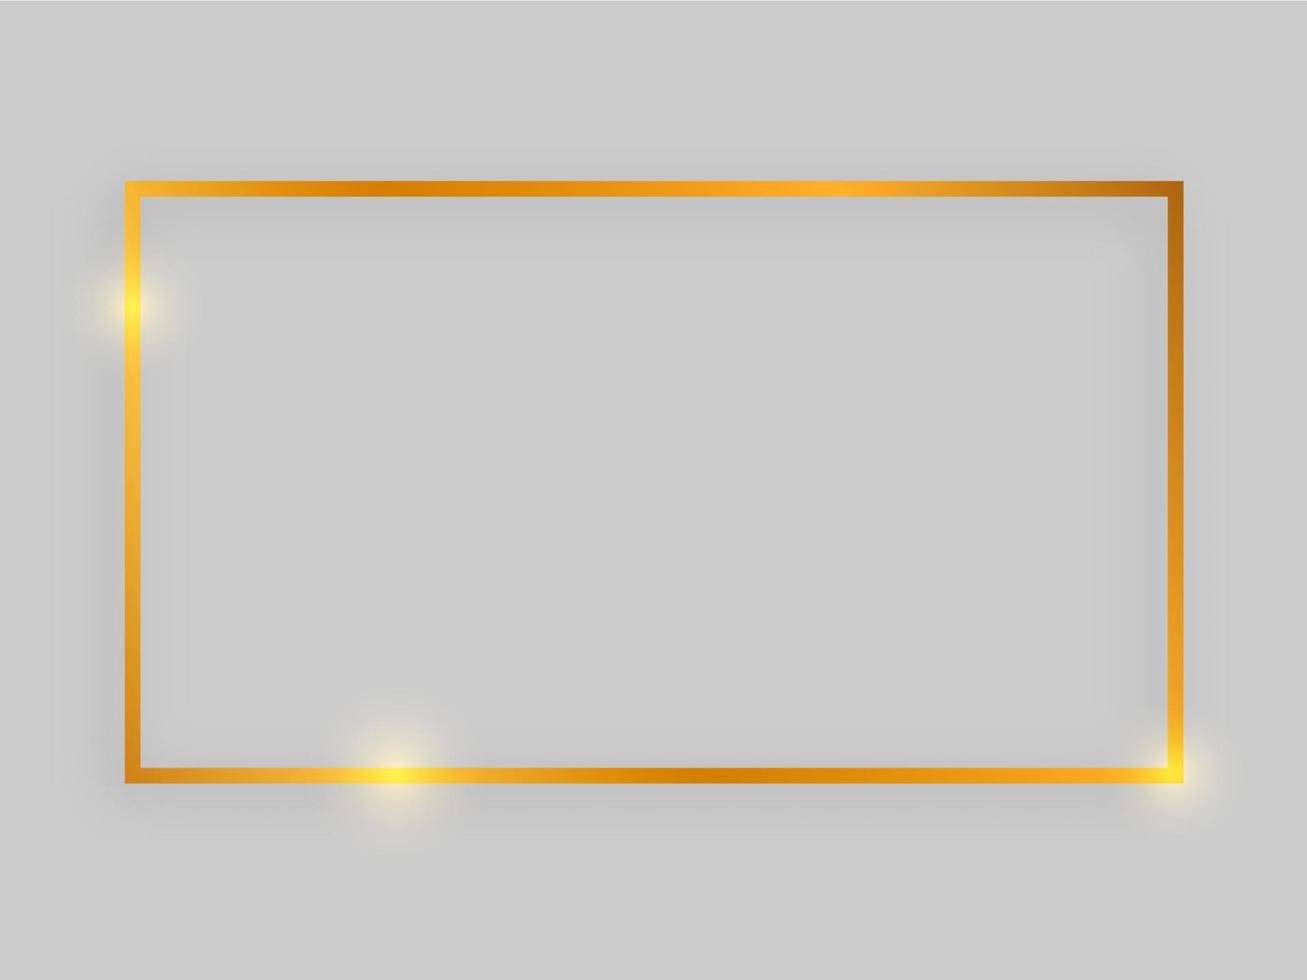 cadre brillant avec des effets lumineux. cadre rectangulaire doré avec ombre sur fond gris. illustration vectorielle vecteur